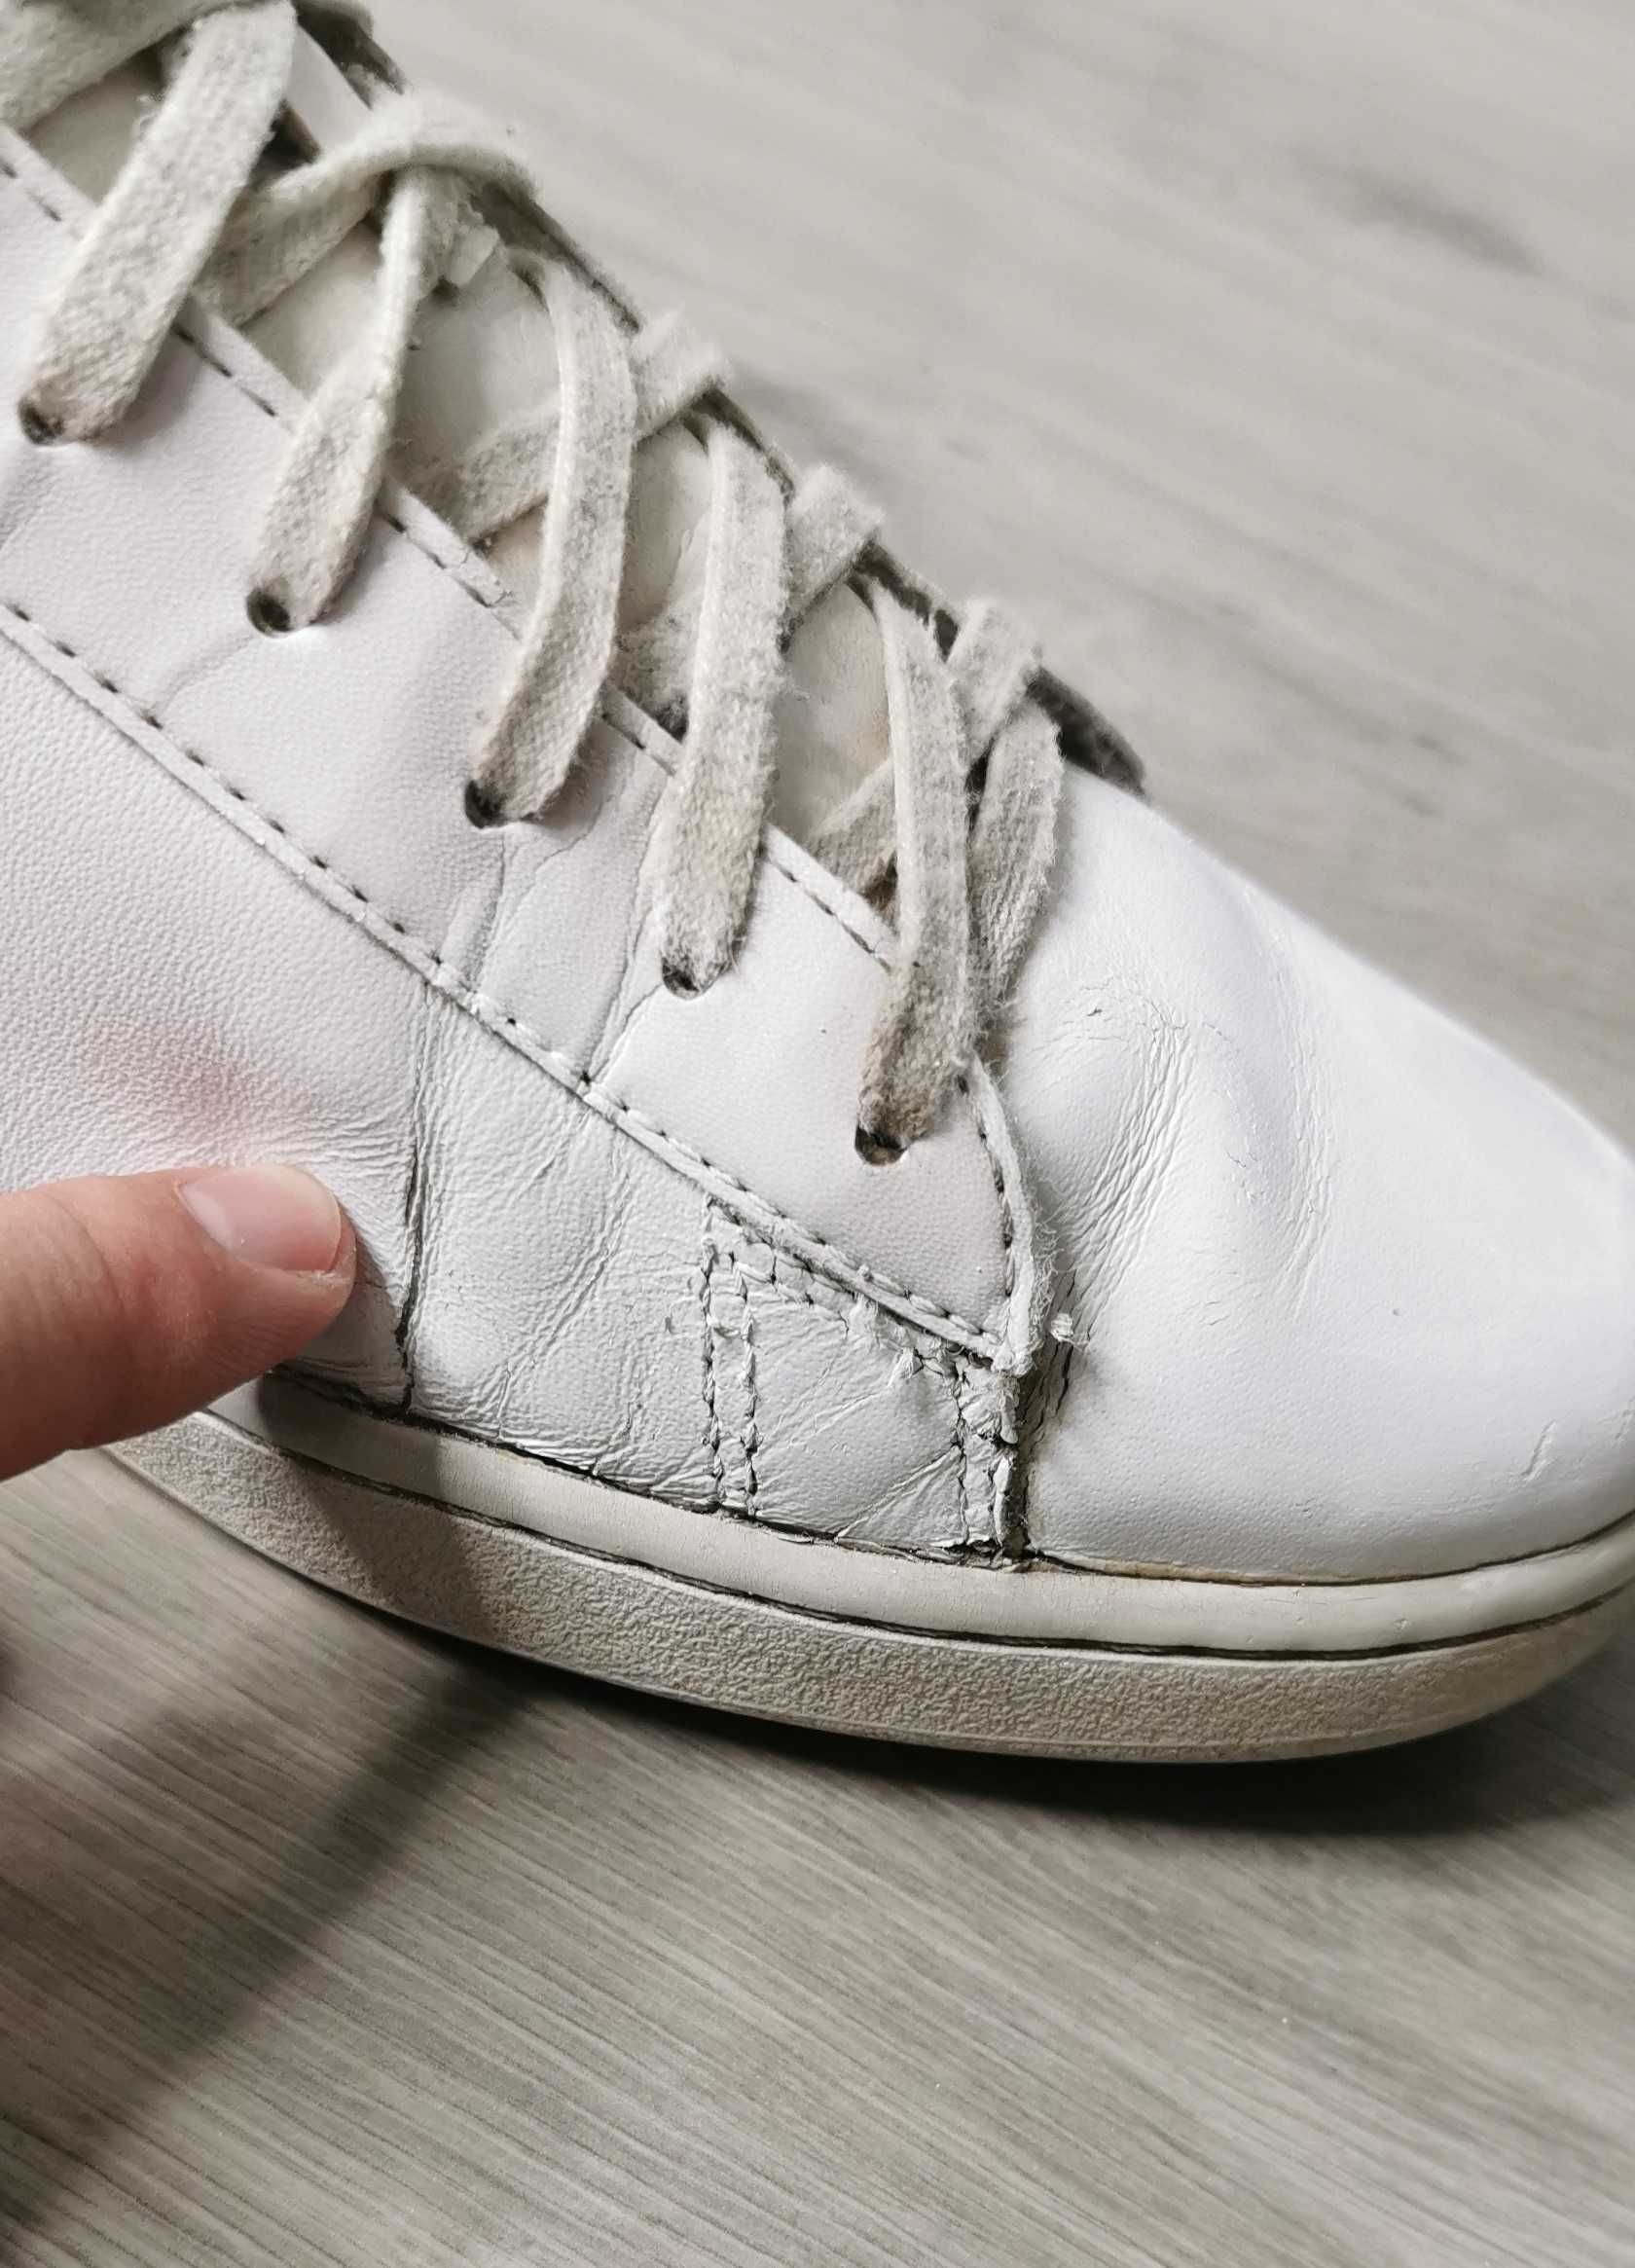 Buty trampki Lacoste półbuty tenisówki skórzane rozmiar 44.5 29cm